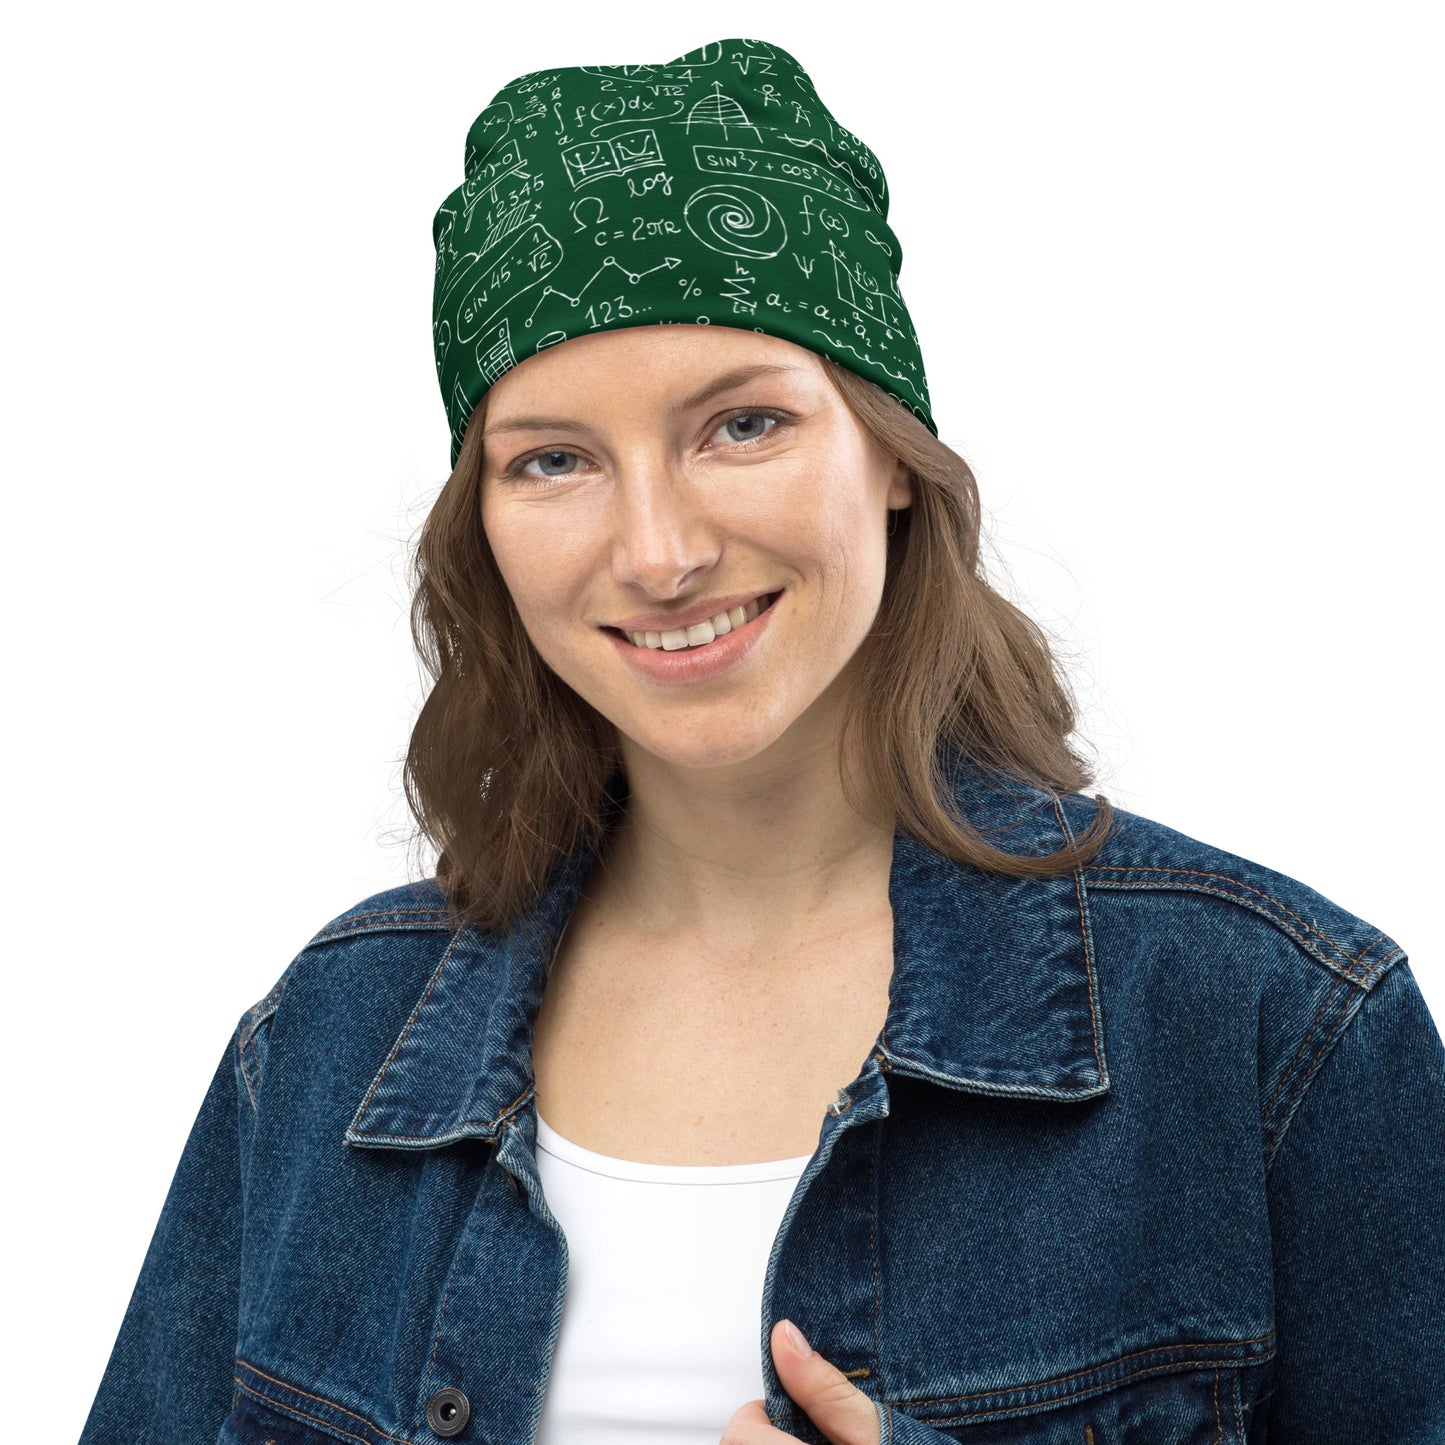 Geek Chic: Math Formulas Print Beanie Hat for the Fashion-Forward Math Lover kudrylab